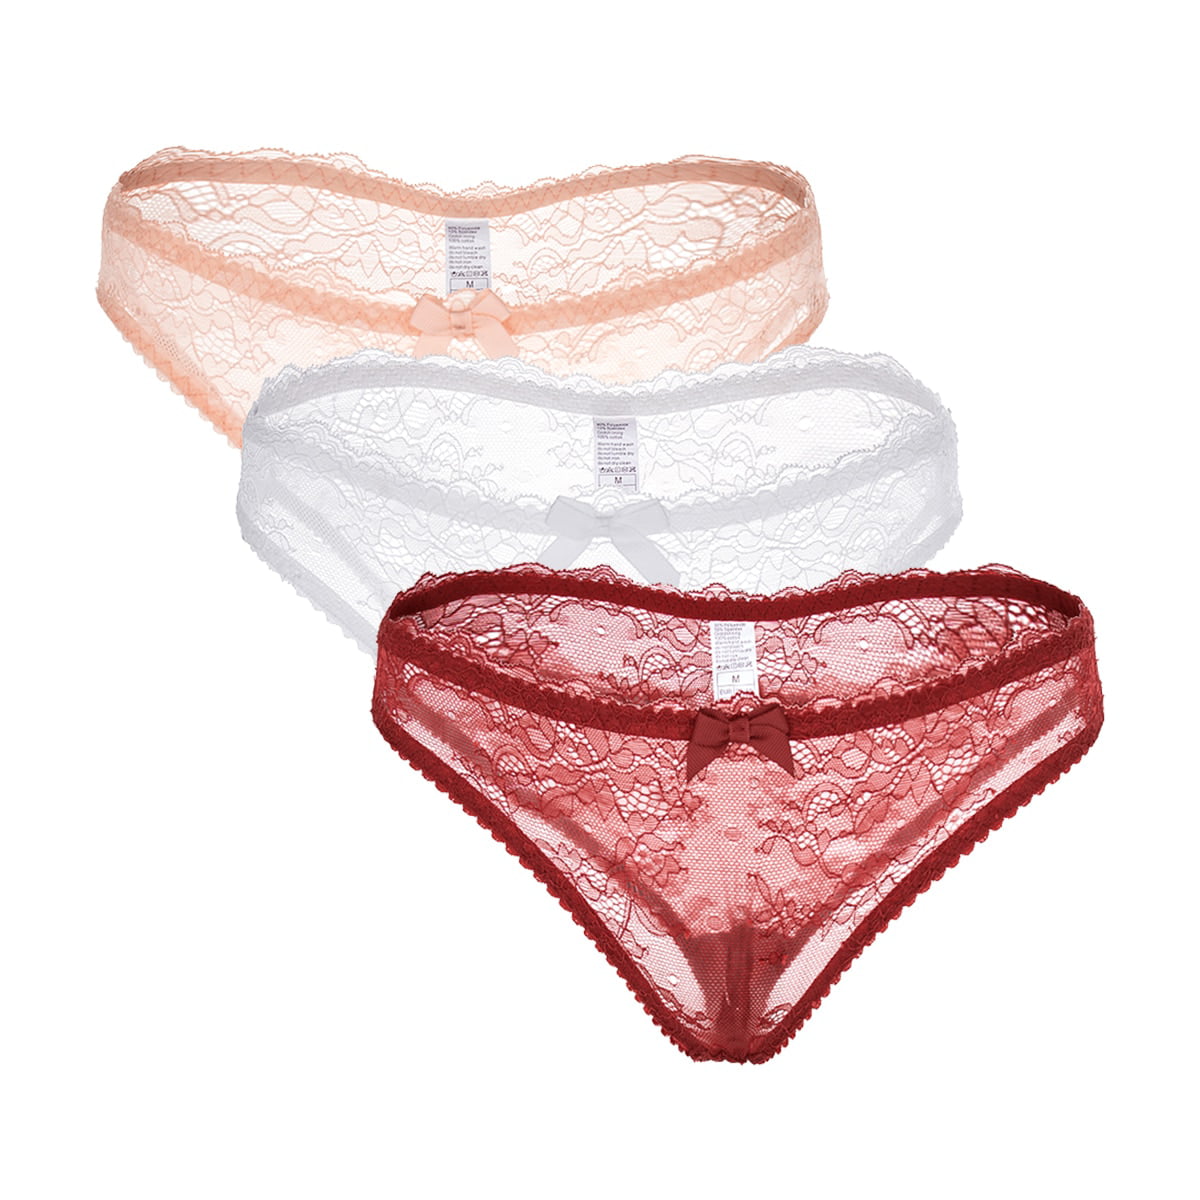 Details about   8 color Nylon Panties Handmade Briefs High Waist Women Men Lace Trim Underwear 